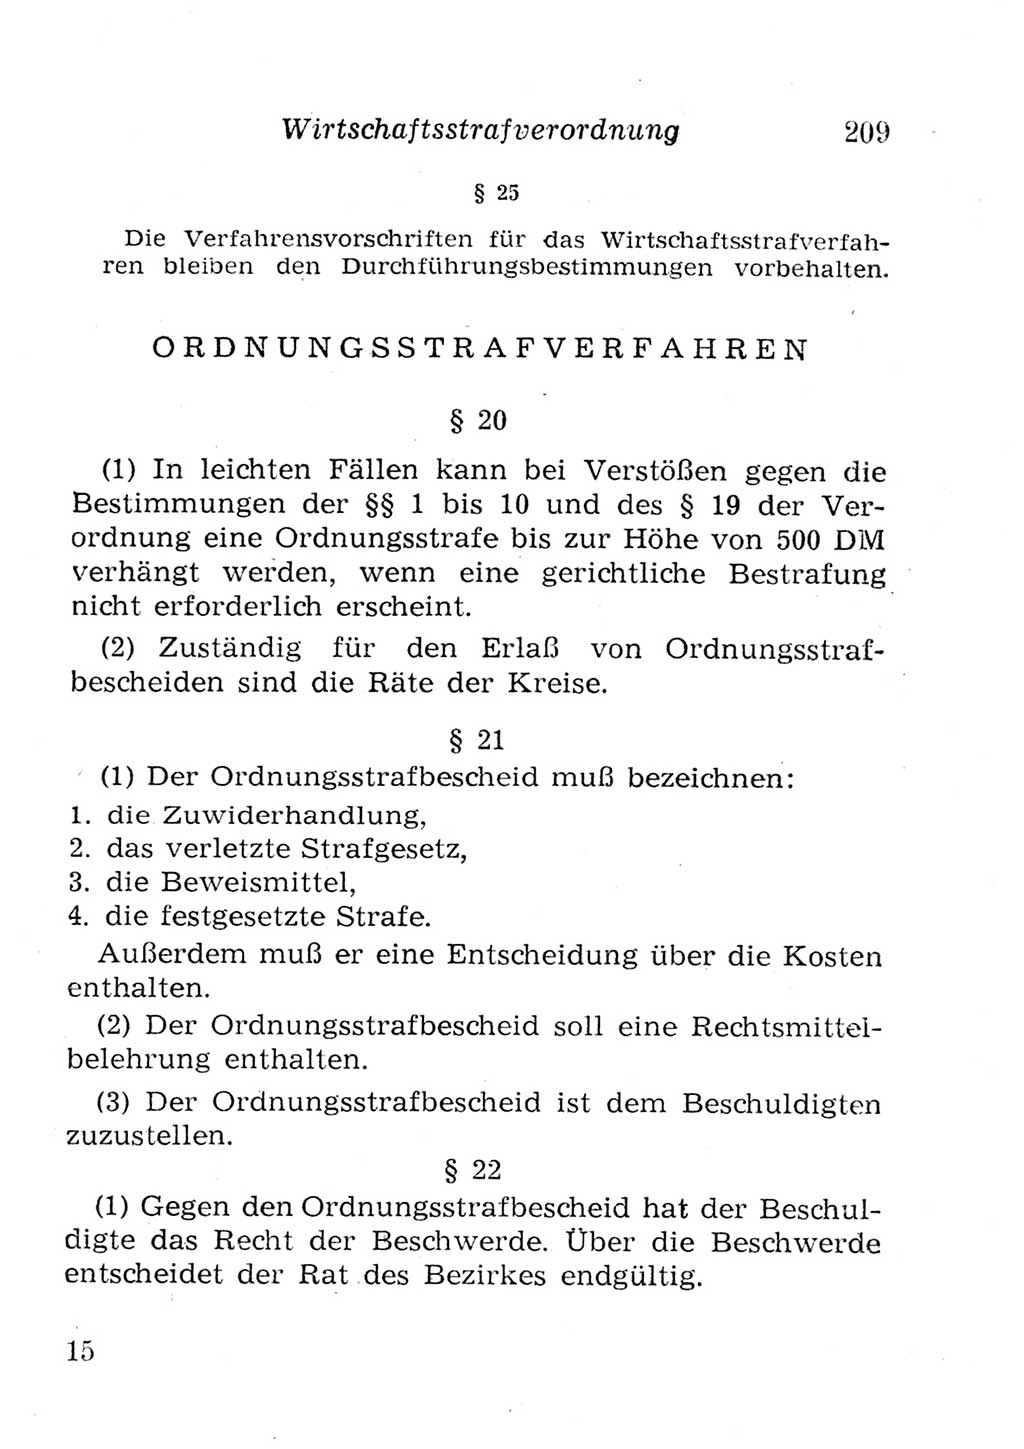 Strafgesetzbuch (StGB) und andere Strafgesetze [Deutsche Demokratische Republik (DDR)] 1957, Seite 209 (StGB Strafges. DDR 1957, S. 209)